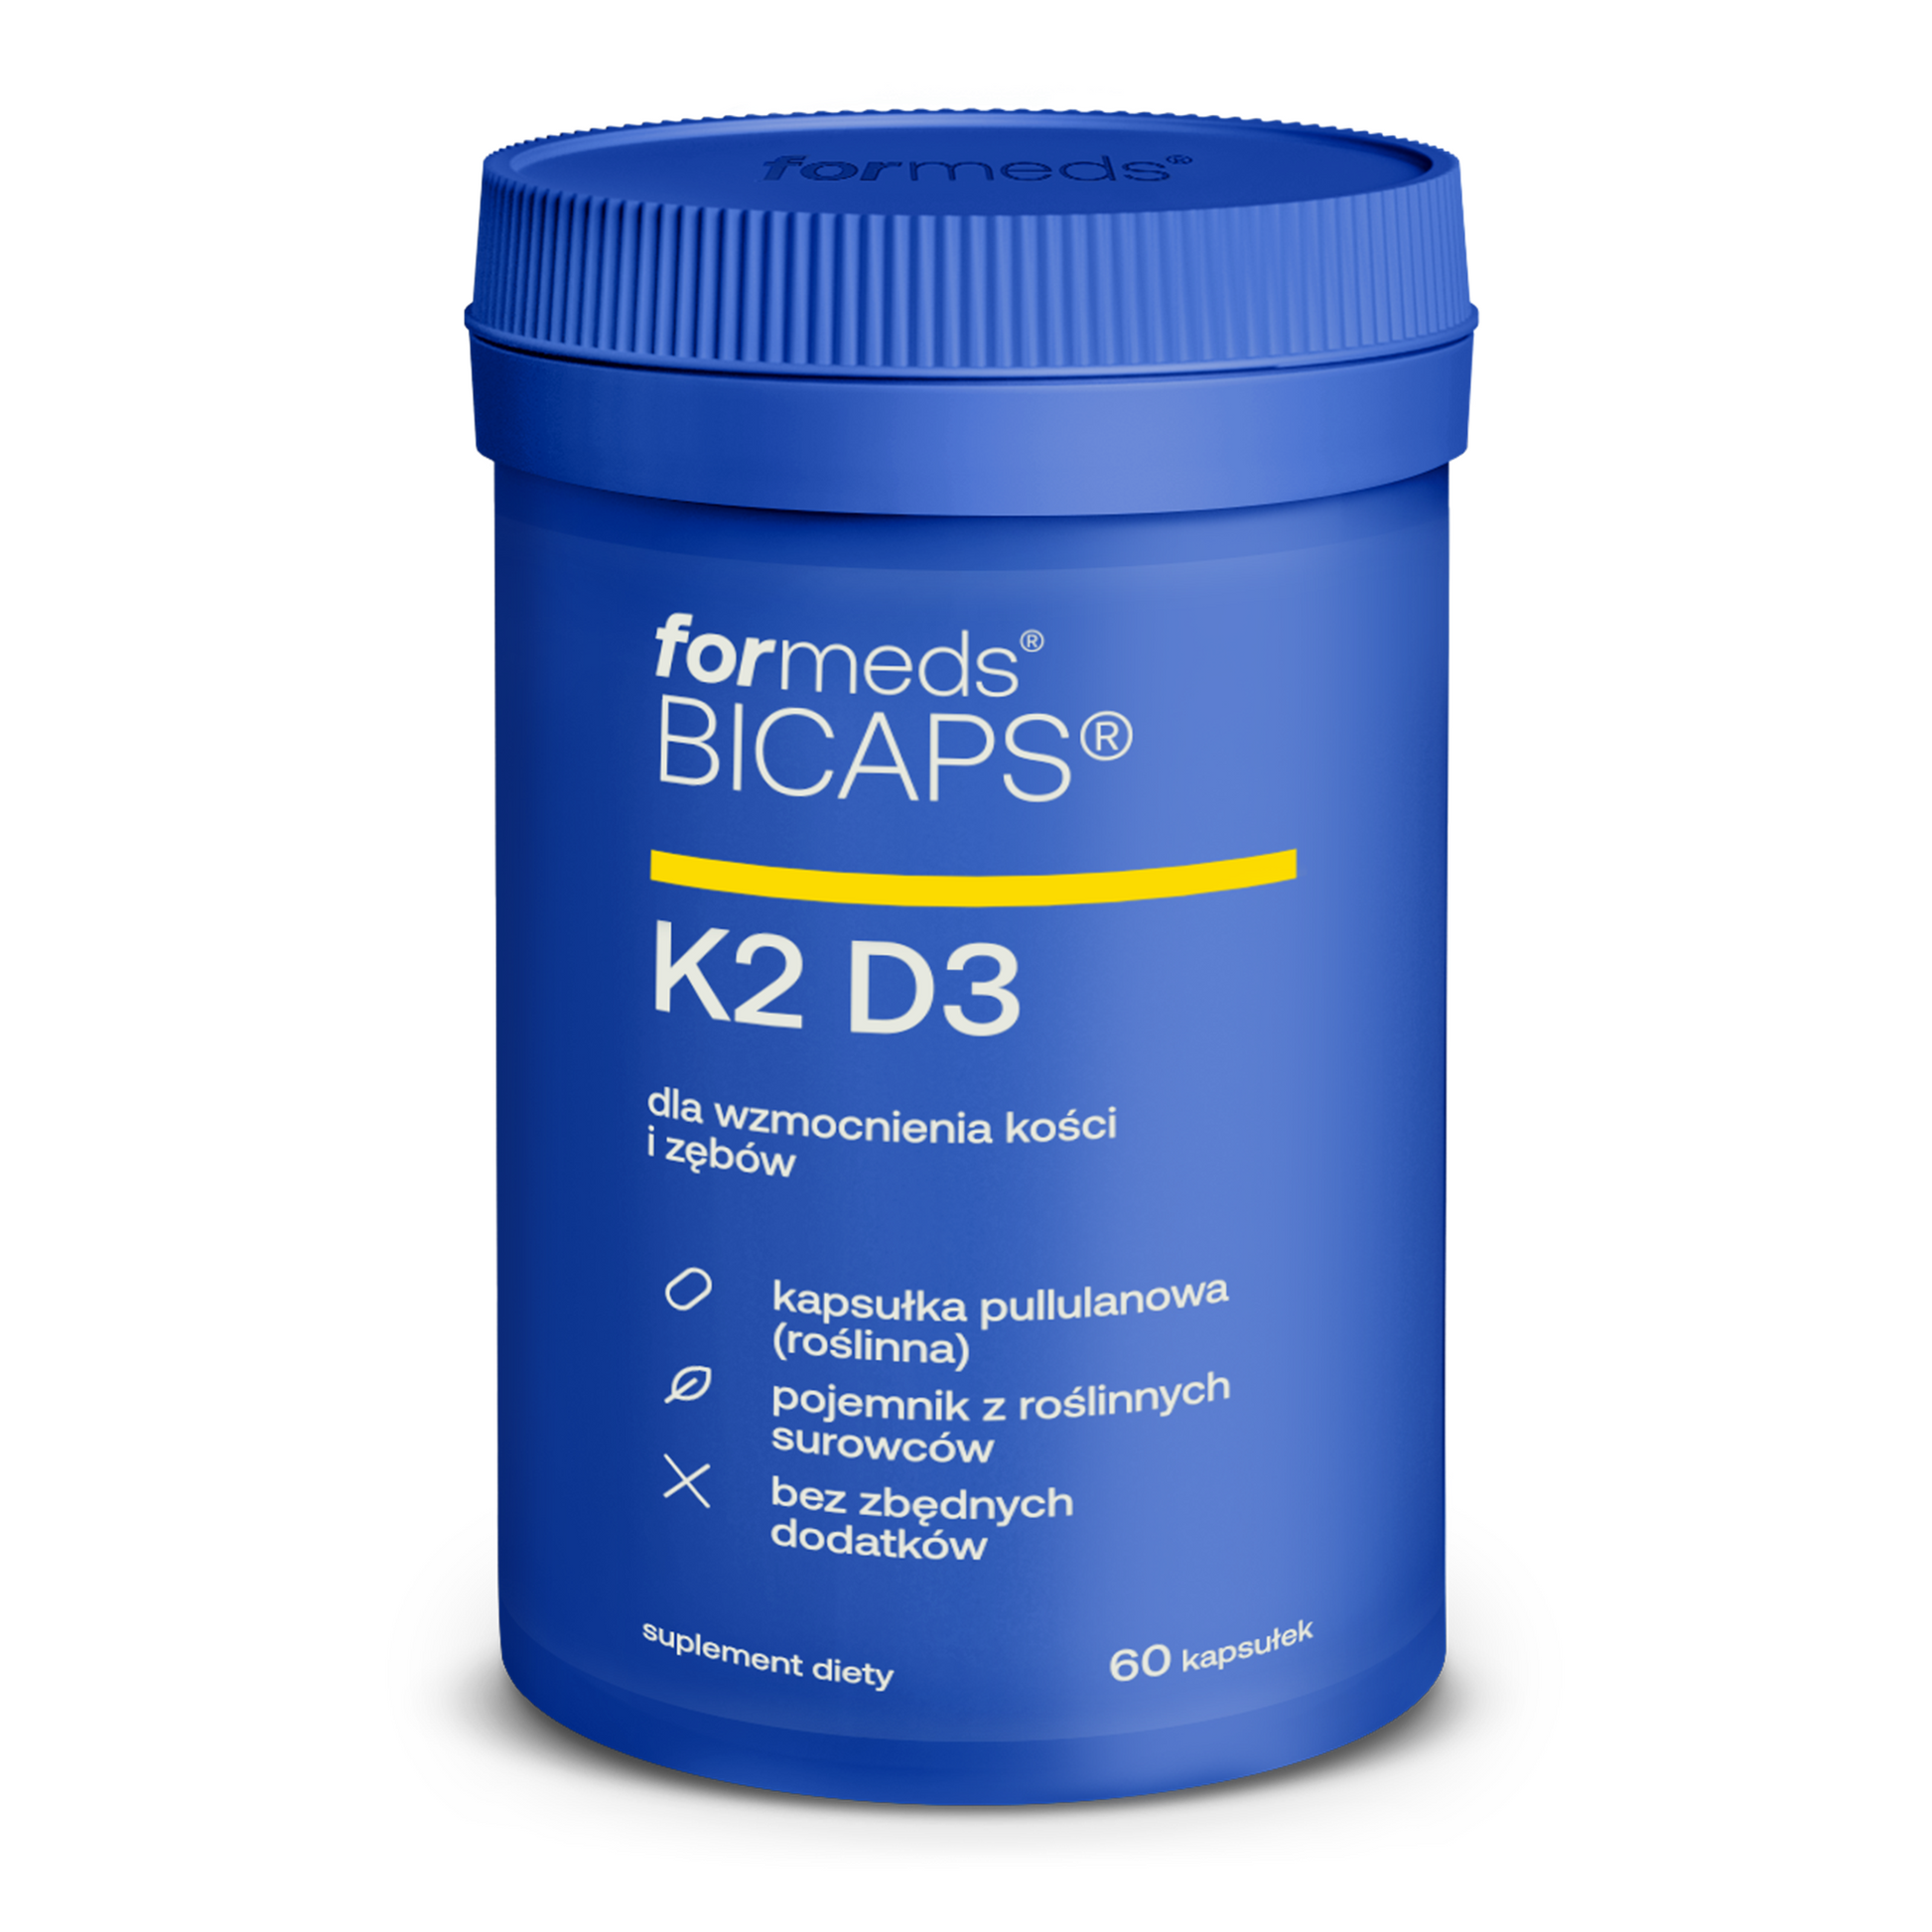 BICAPS K2 D3 - tabletki, kapsułki Witamina D3 2000 j.m. + K2